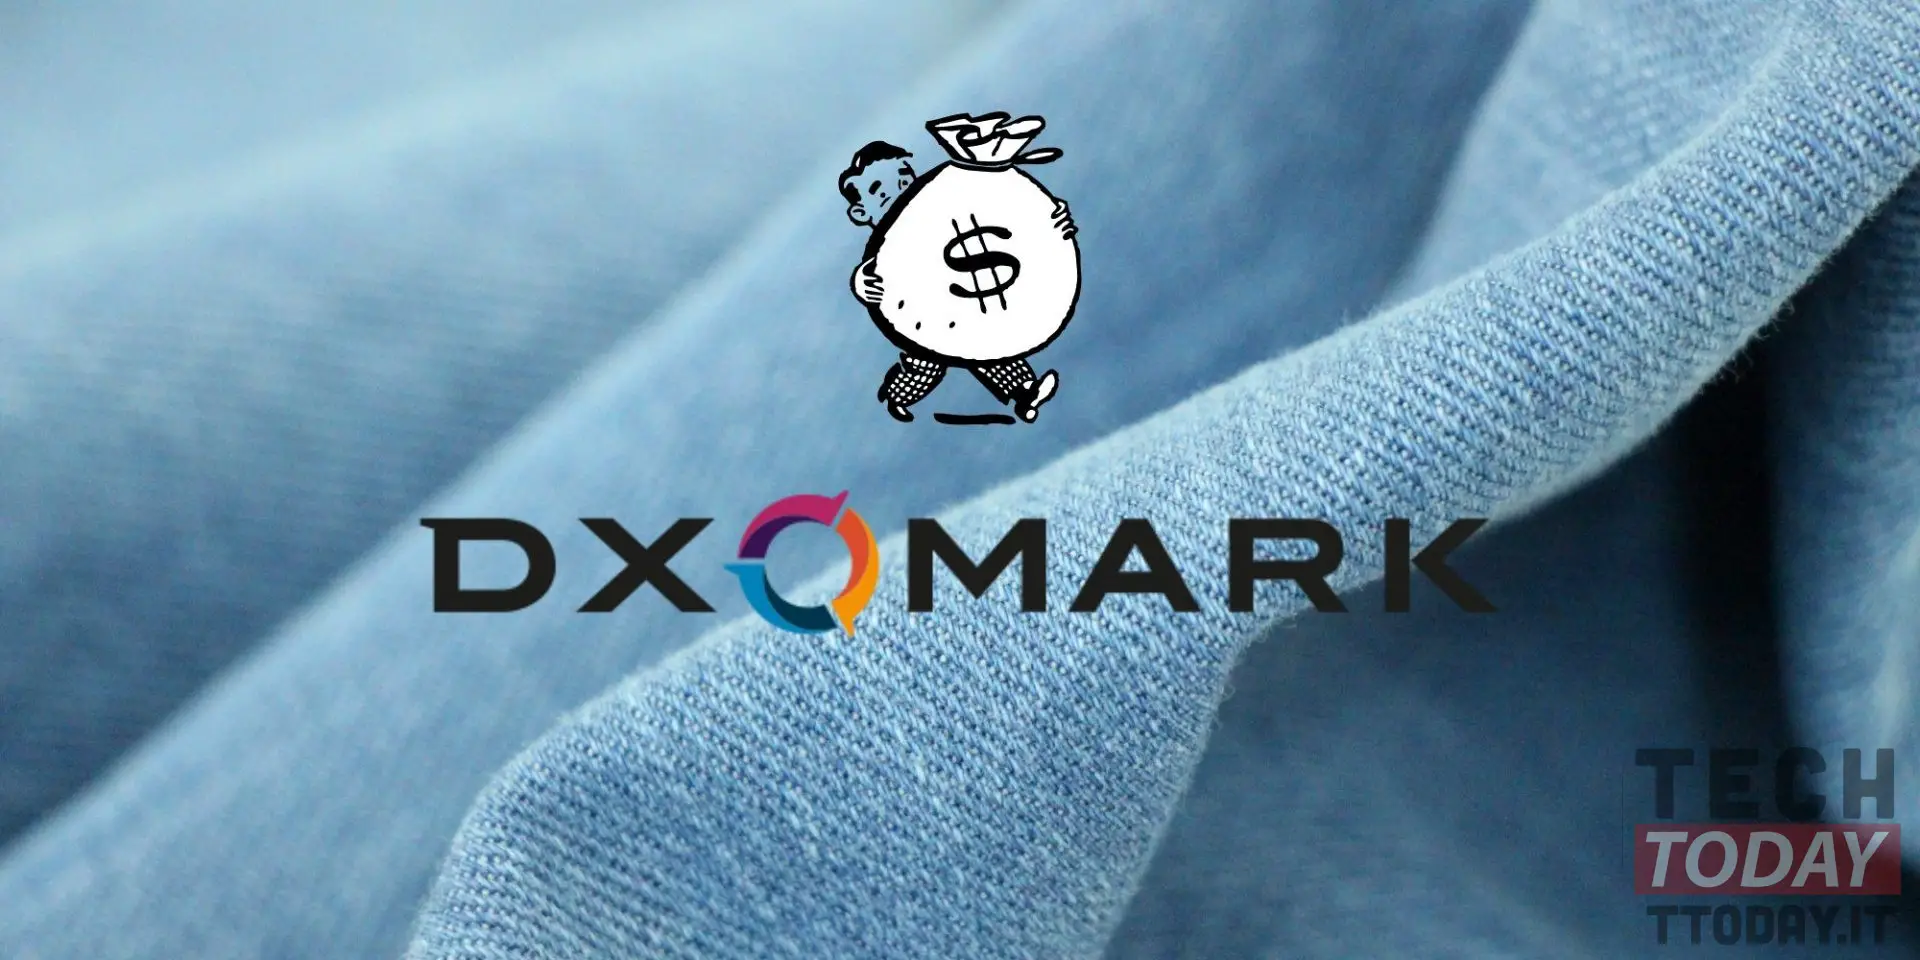 dxomark inserta la segmentación y el precio de los teléfonos inteligentes